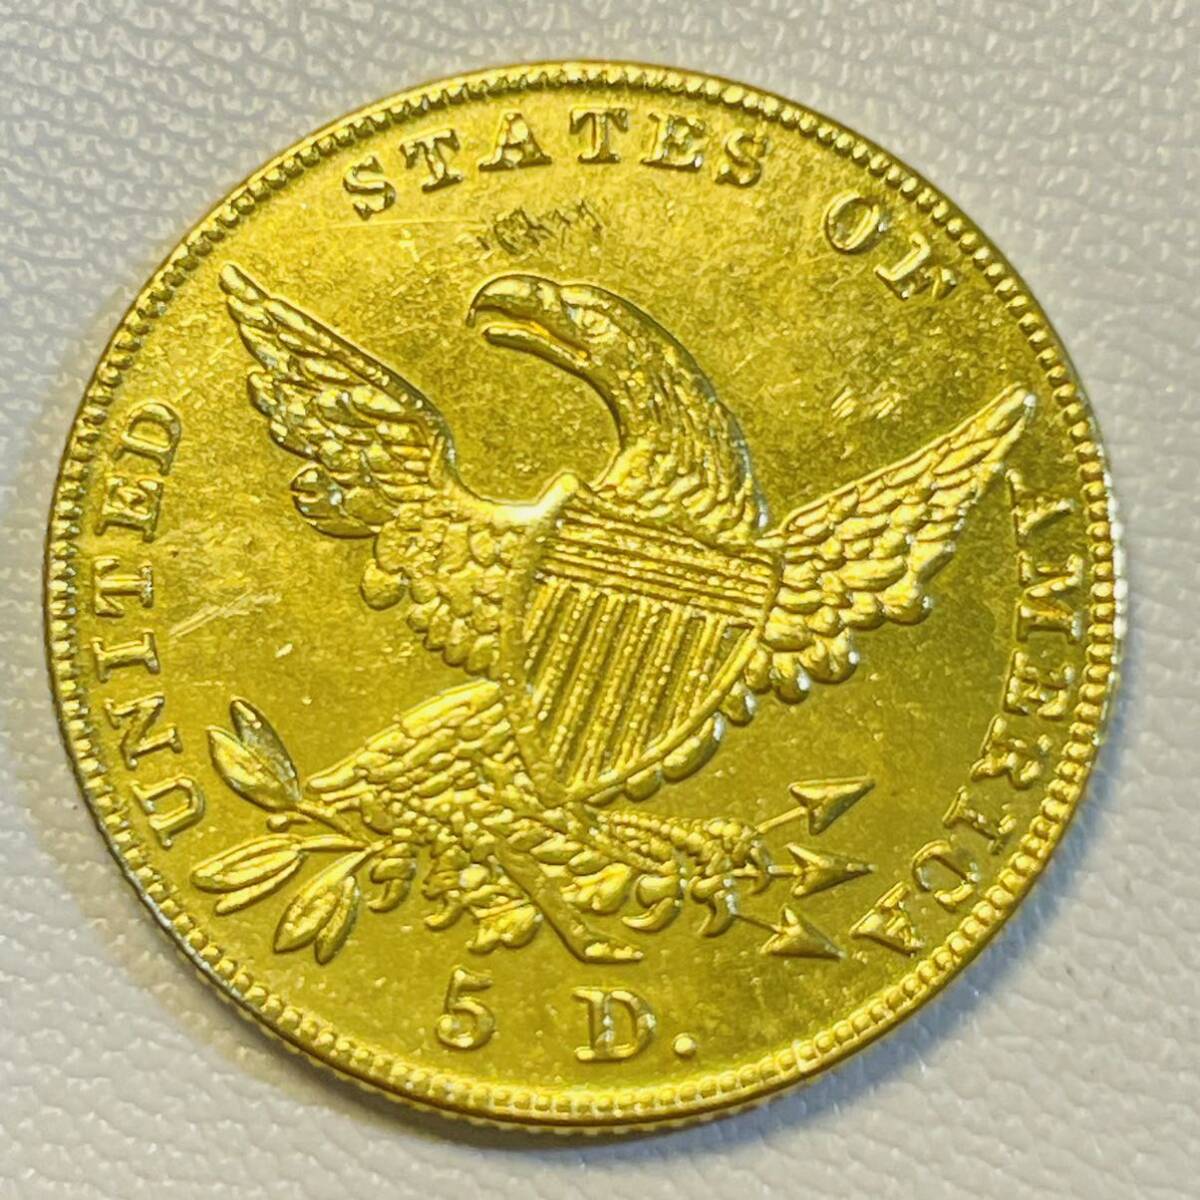 アメリカ 硬貨 古銭 自由の女神 1834年 ハクトウワシ 13の星 13の州 イーグル 矢 オリーブの枝 コイン 重4.52g 金貨 _画像2